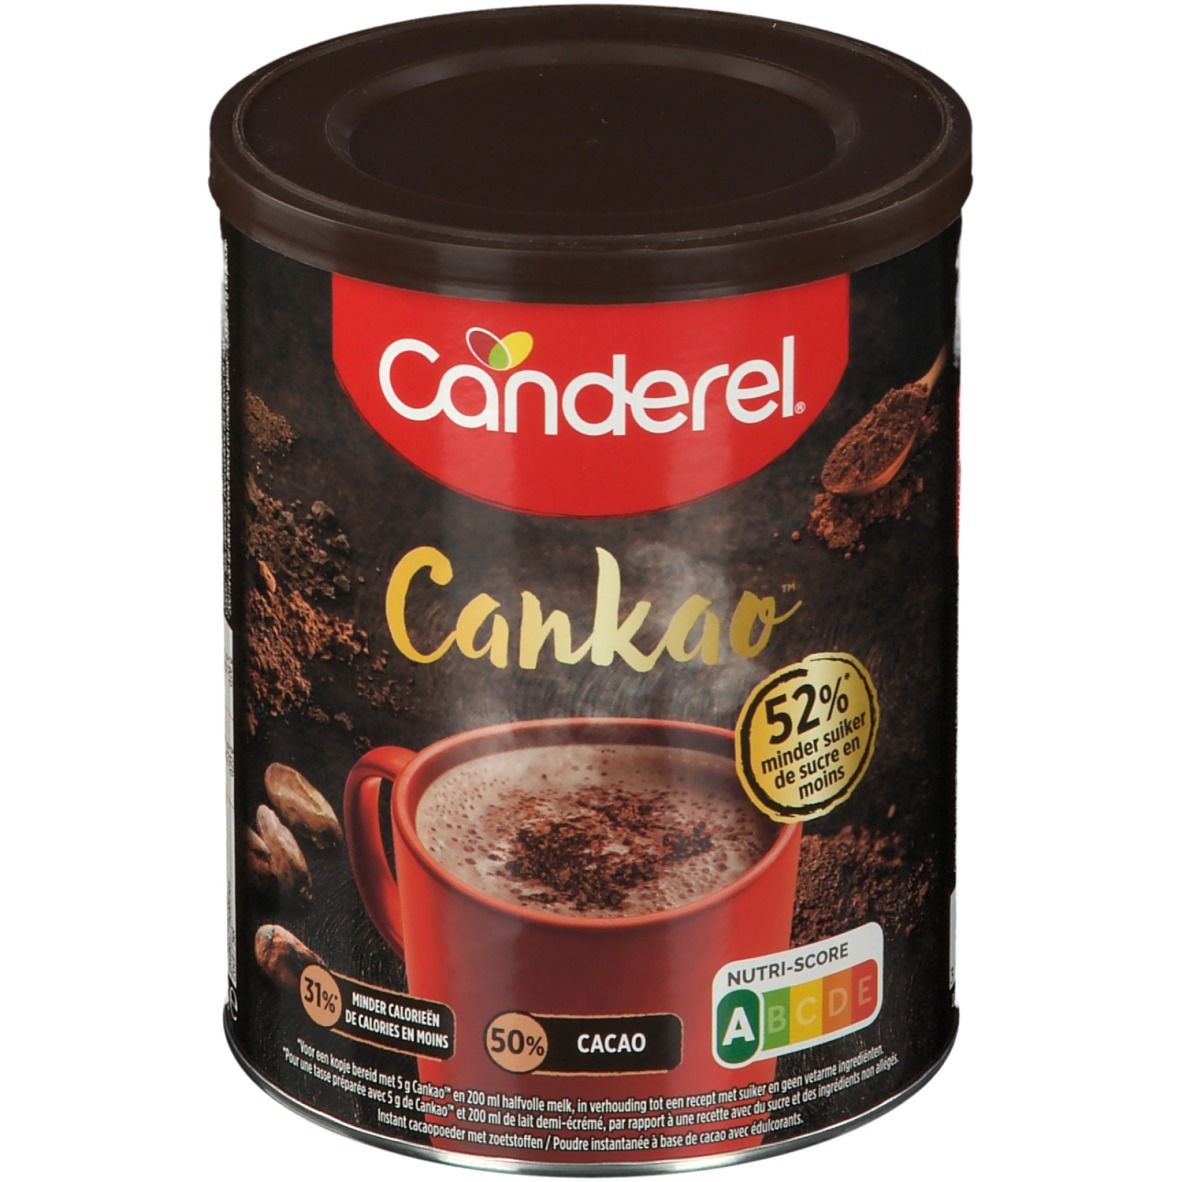 Canderel Canderel cankao - En promotion chez Intermarche